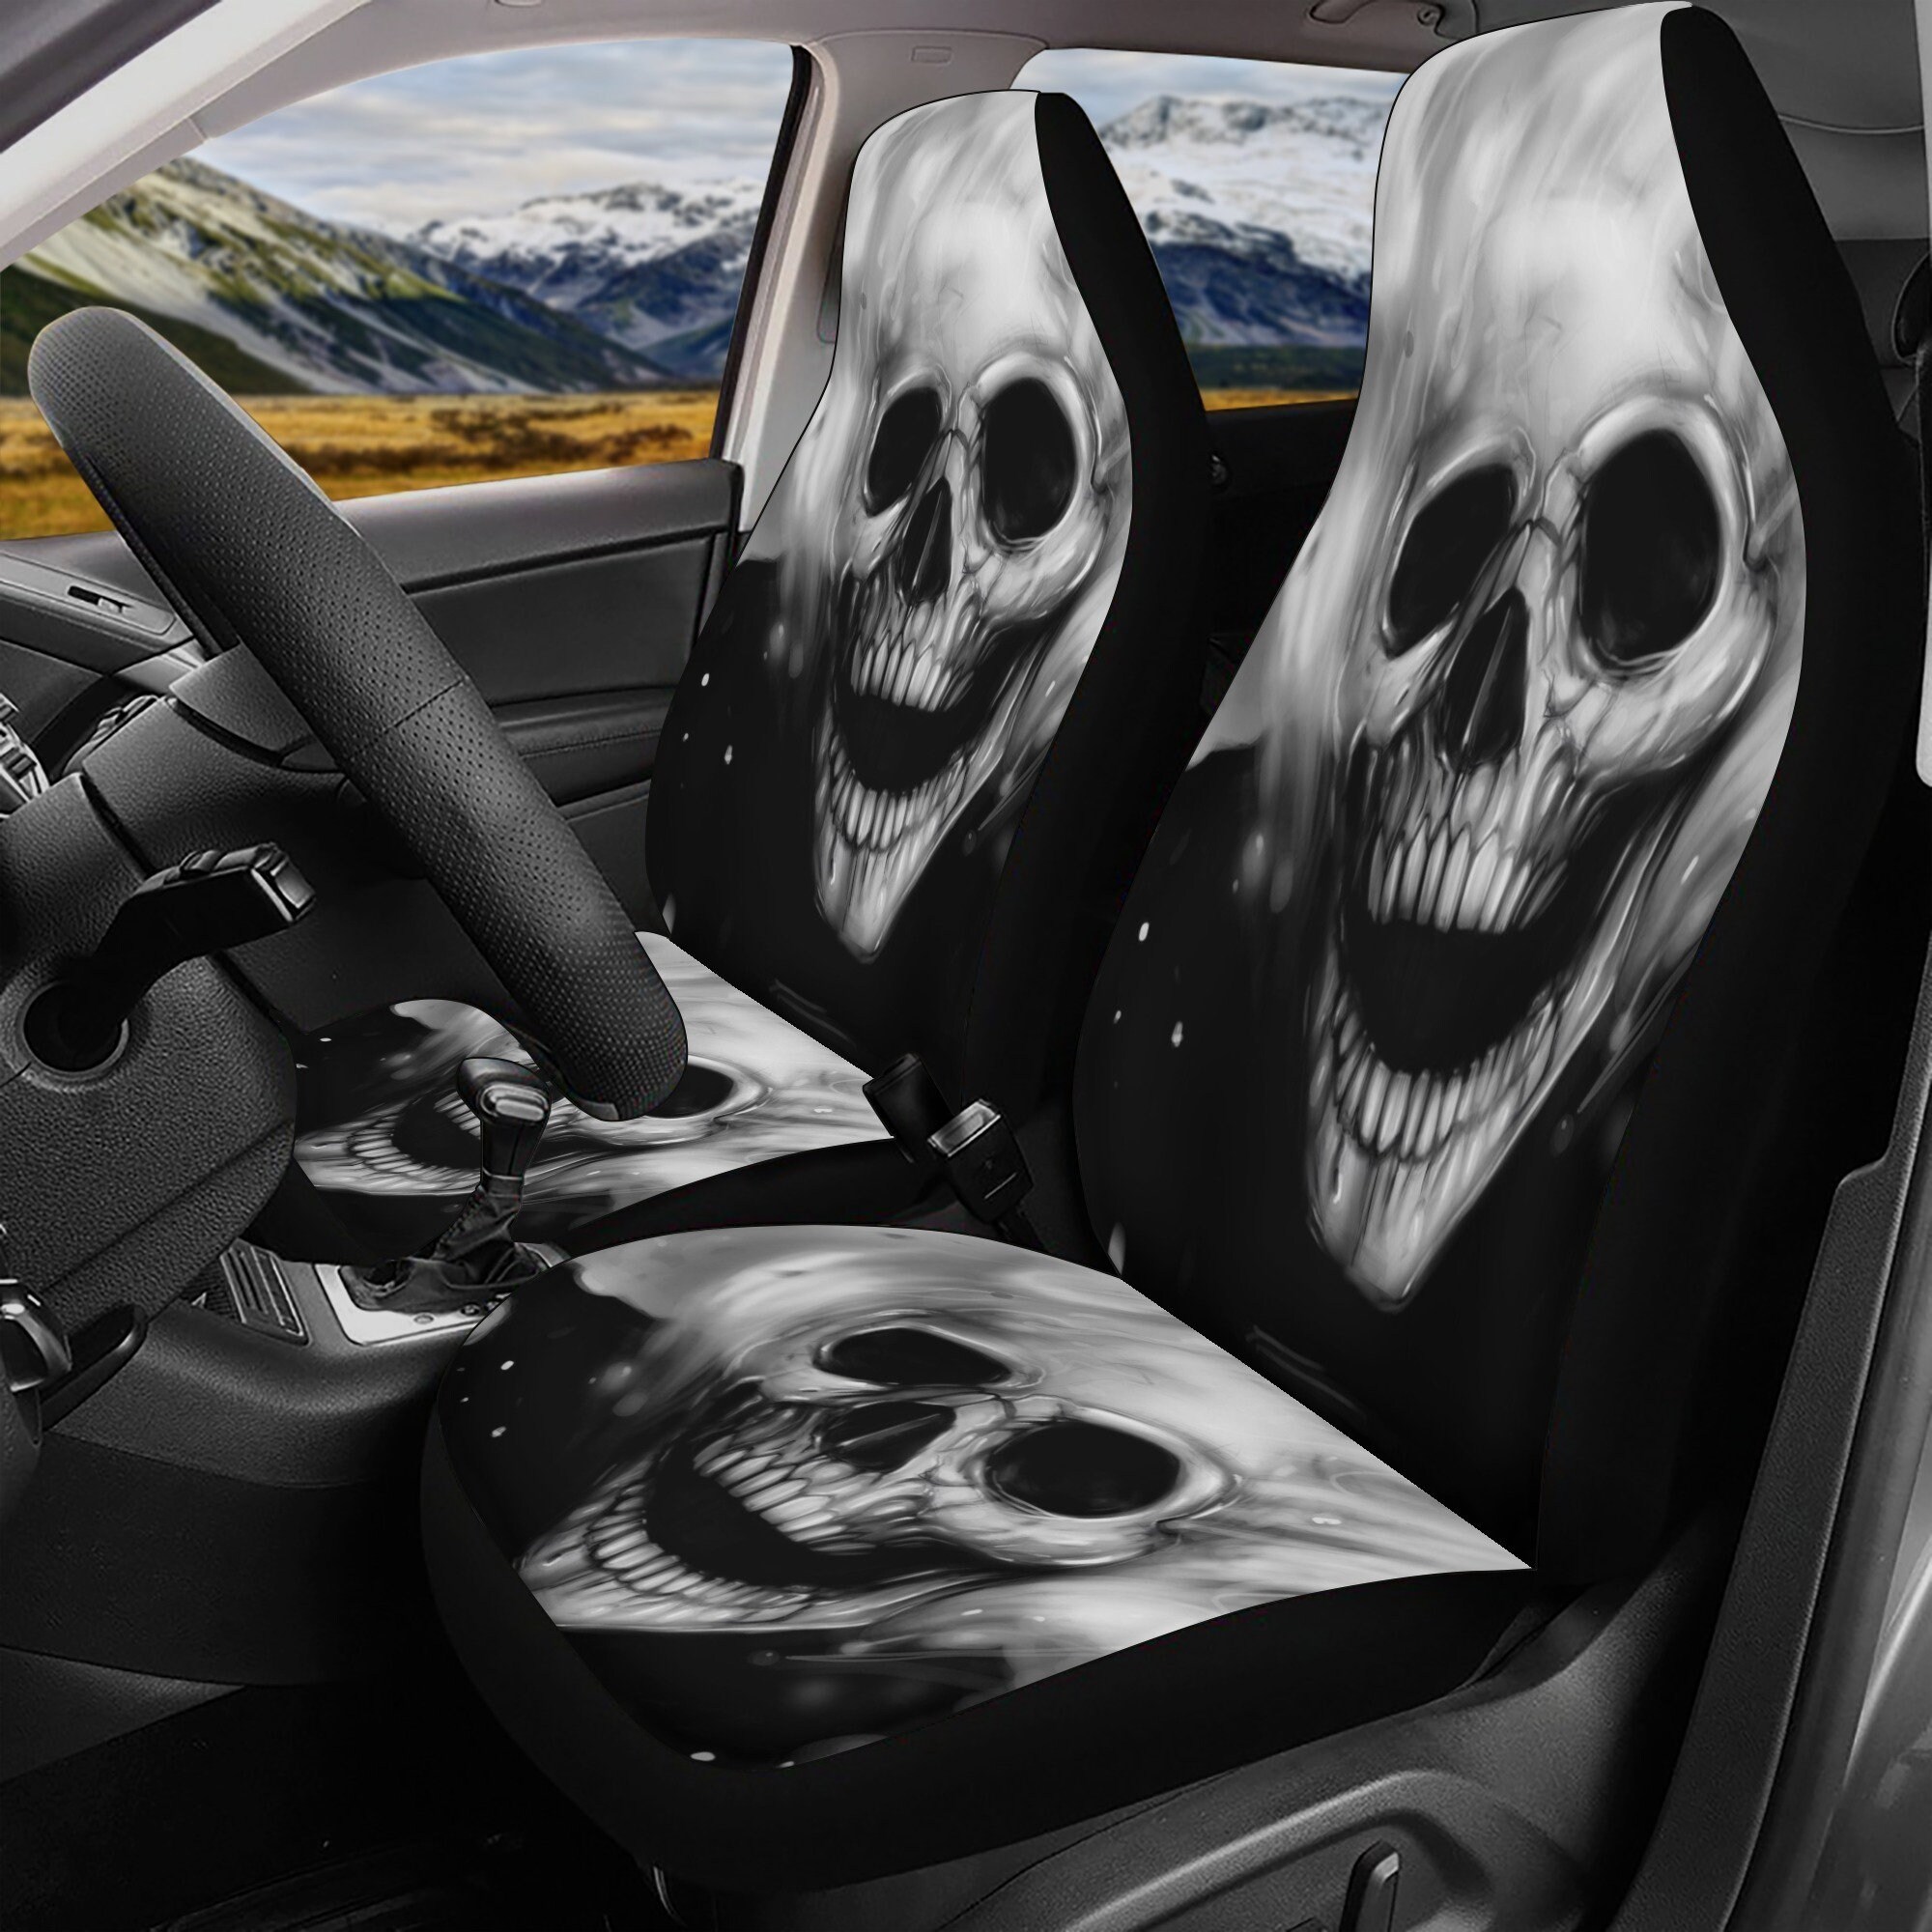 Gothic Skull Seat Cover for Car, Skull Rug for Car, Skeleton Skull